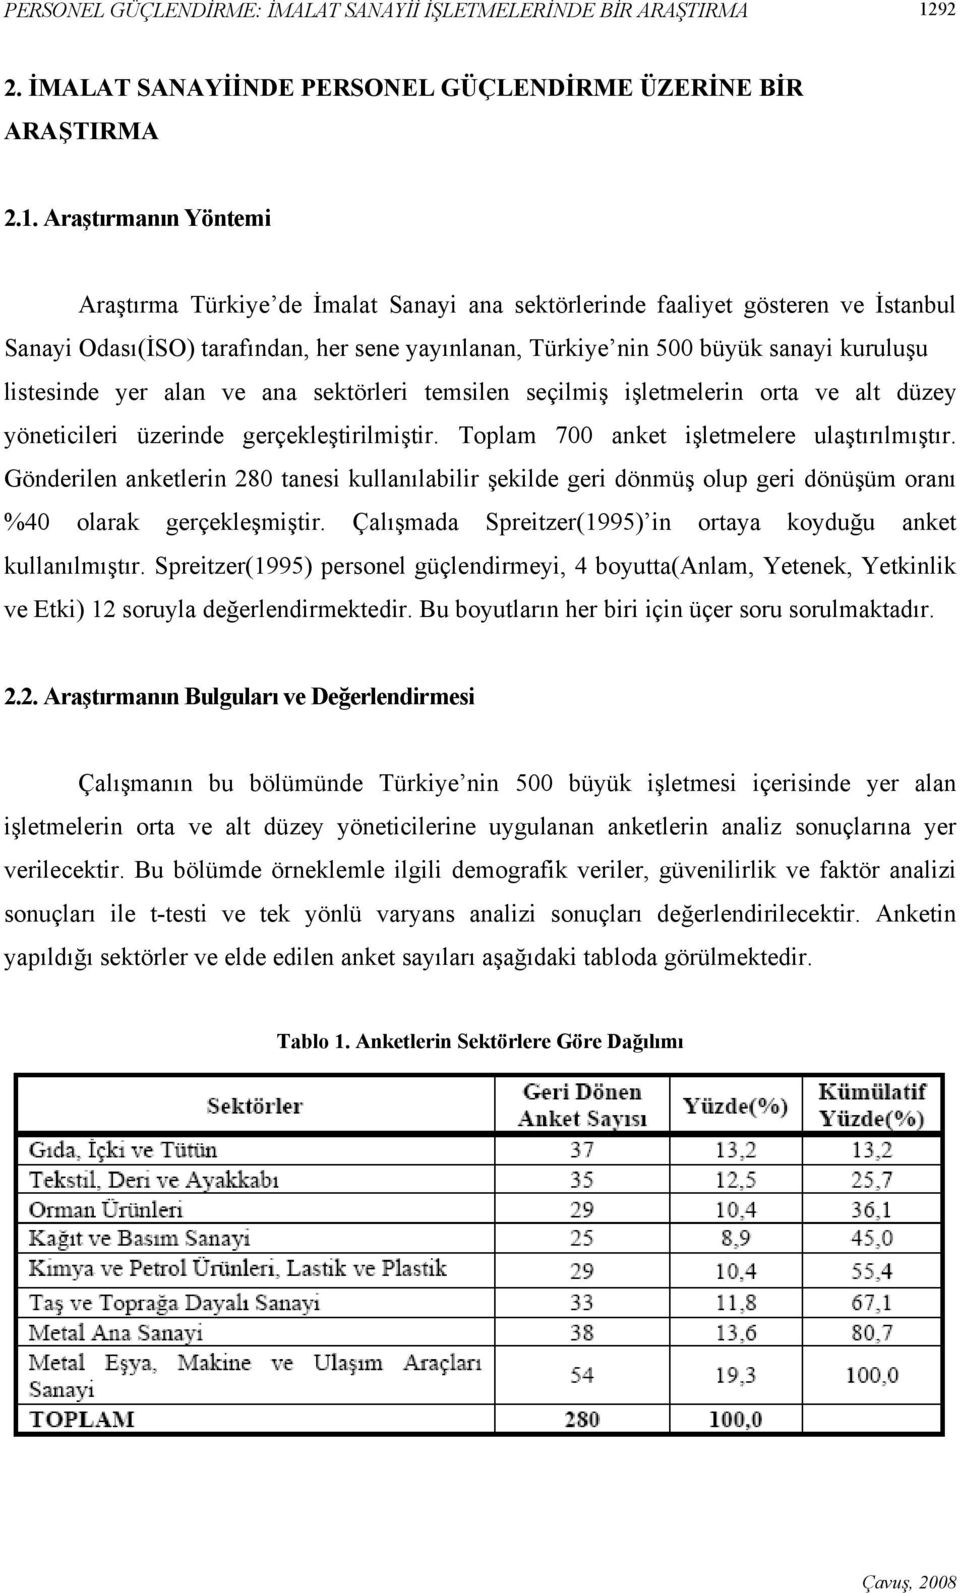 Araştırmanın Yöntemi Araştırma Türkiye de İmalat Sanayi ana sektörlerinde faaliyet gösteren ve İstanbul Sanayi Odası(İSO) tarafından, her sene yayınlanan, Türkiye nin 500 büyük sanayi kuruluşu